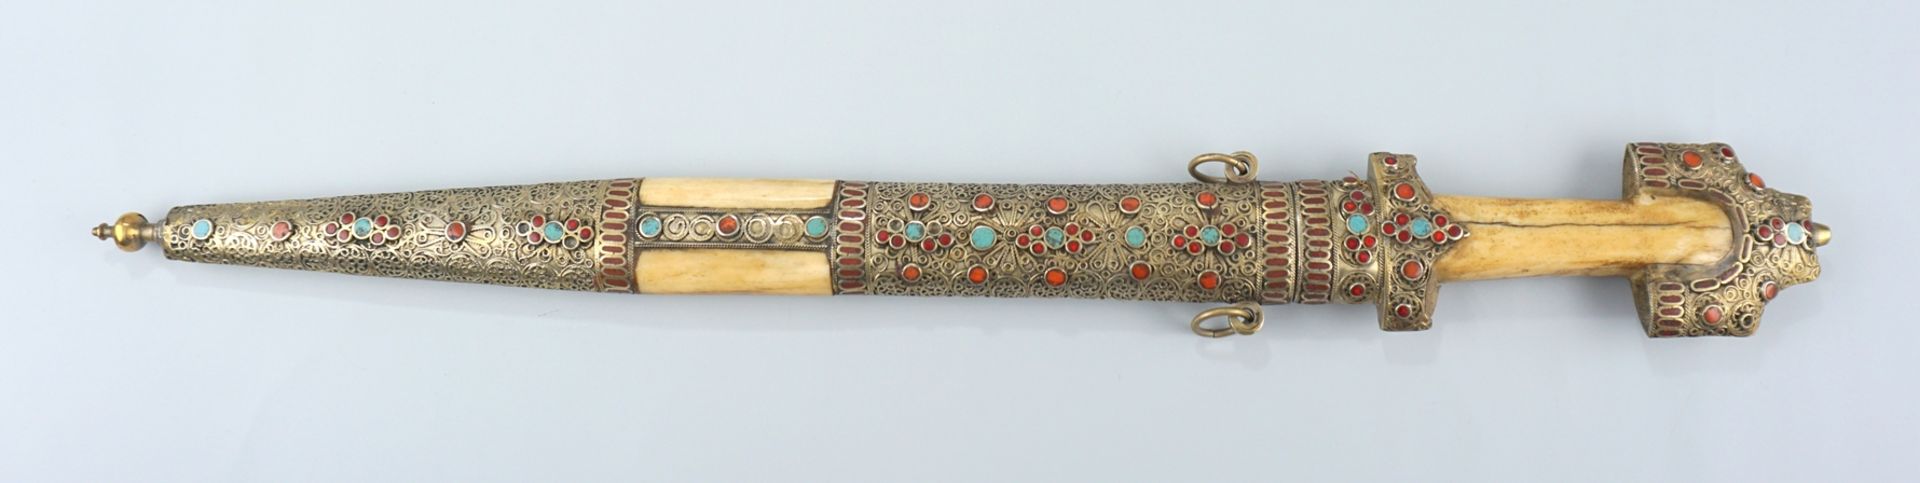 prunkvolles Schwert, Persien, Mitte 20. Jh. - Image 2 of 2